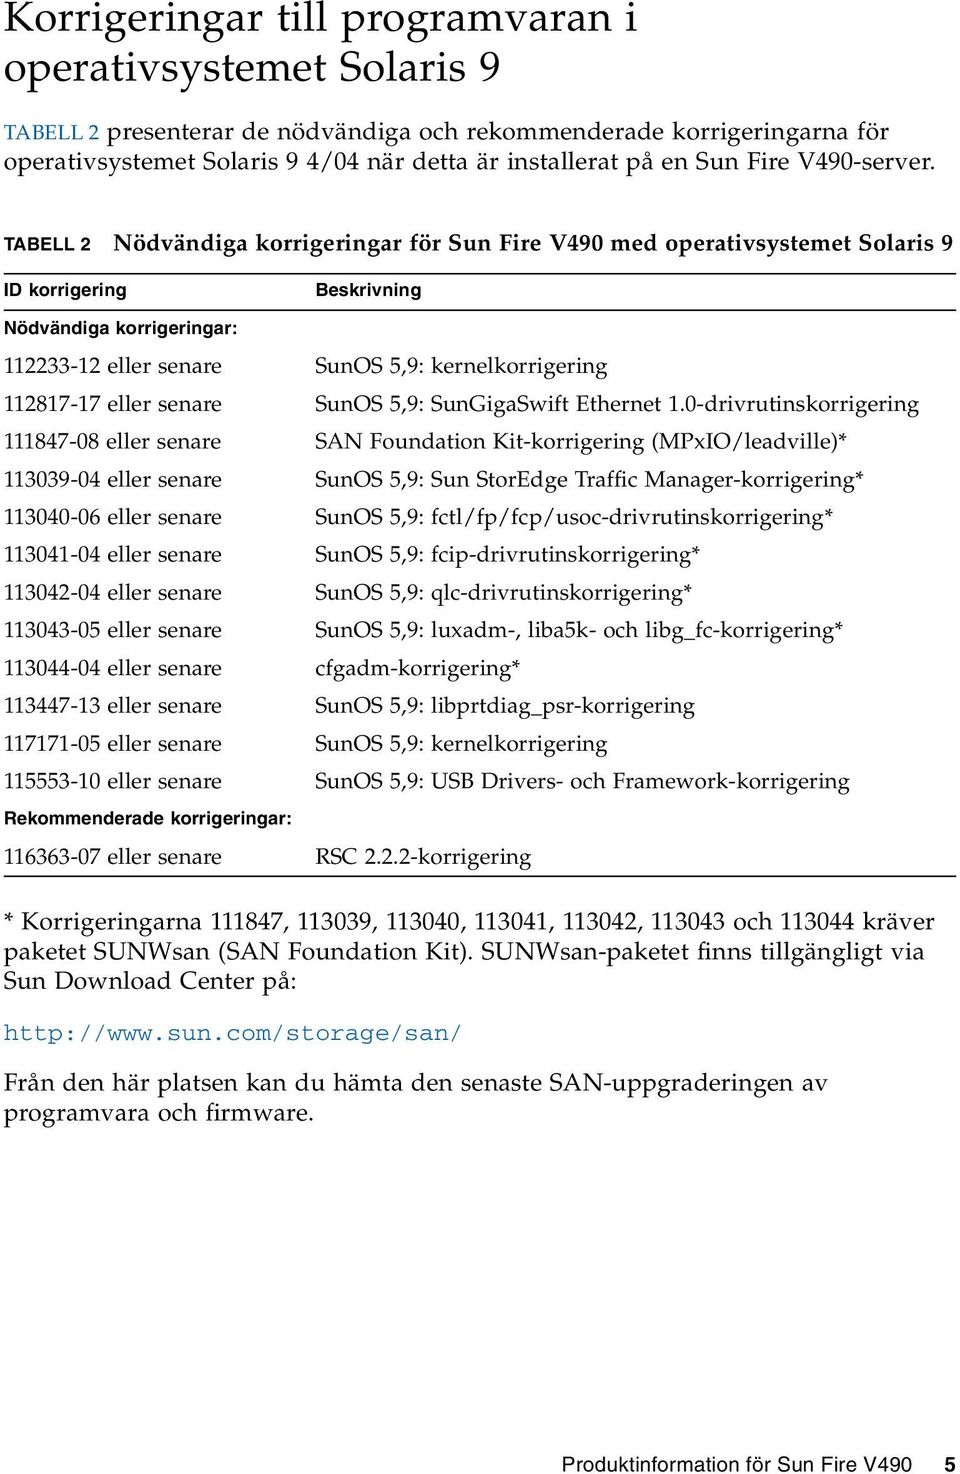 TABELL 2 Nödvändiga korrigeringar för Sun Fire V490 med operativsystemet Solaris 9 ID korrigering Beskrivning Nödvändiga korrigeringar: 112233-12 eller senare SunOS 5,9: kernelkorrigering 112817-17